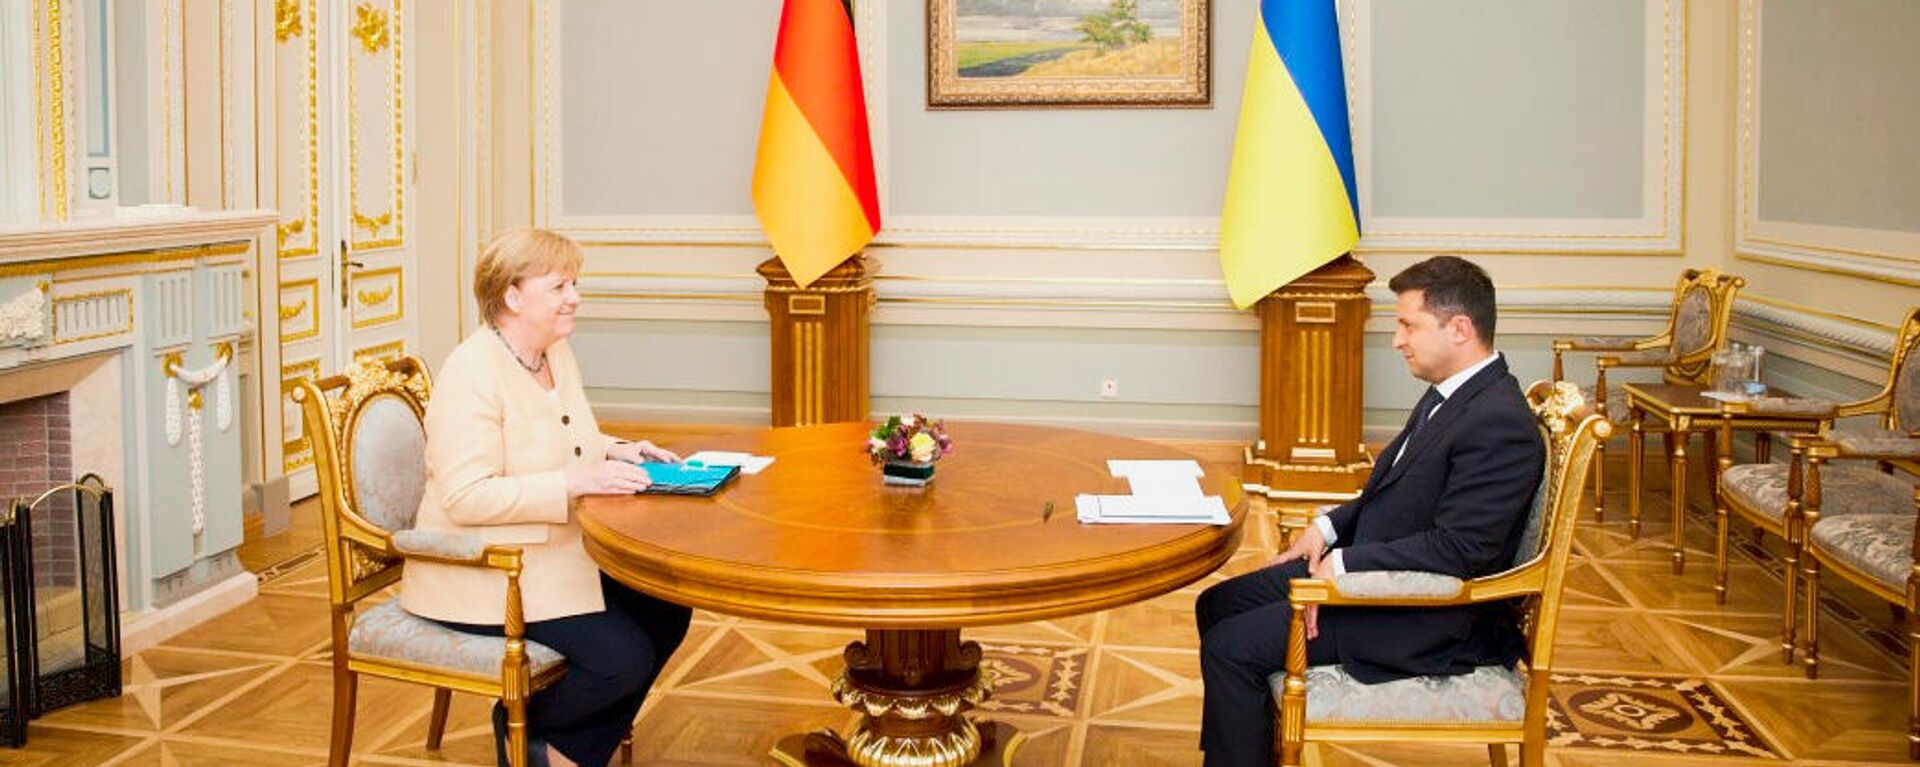 Президент Украины Владимир Зеленский и канцлер Германии Ангела Меркель во время встречи в Киеве - Sputnik Latvija, 1920, 25.08.2021